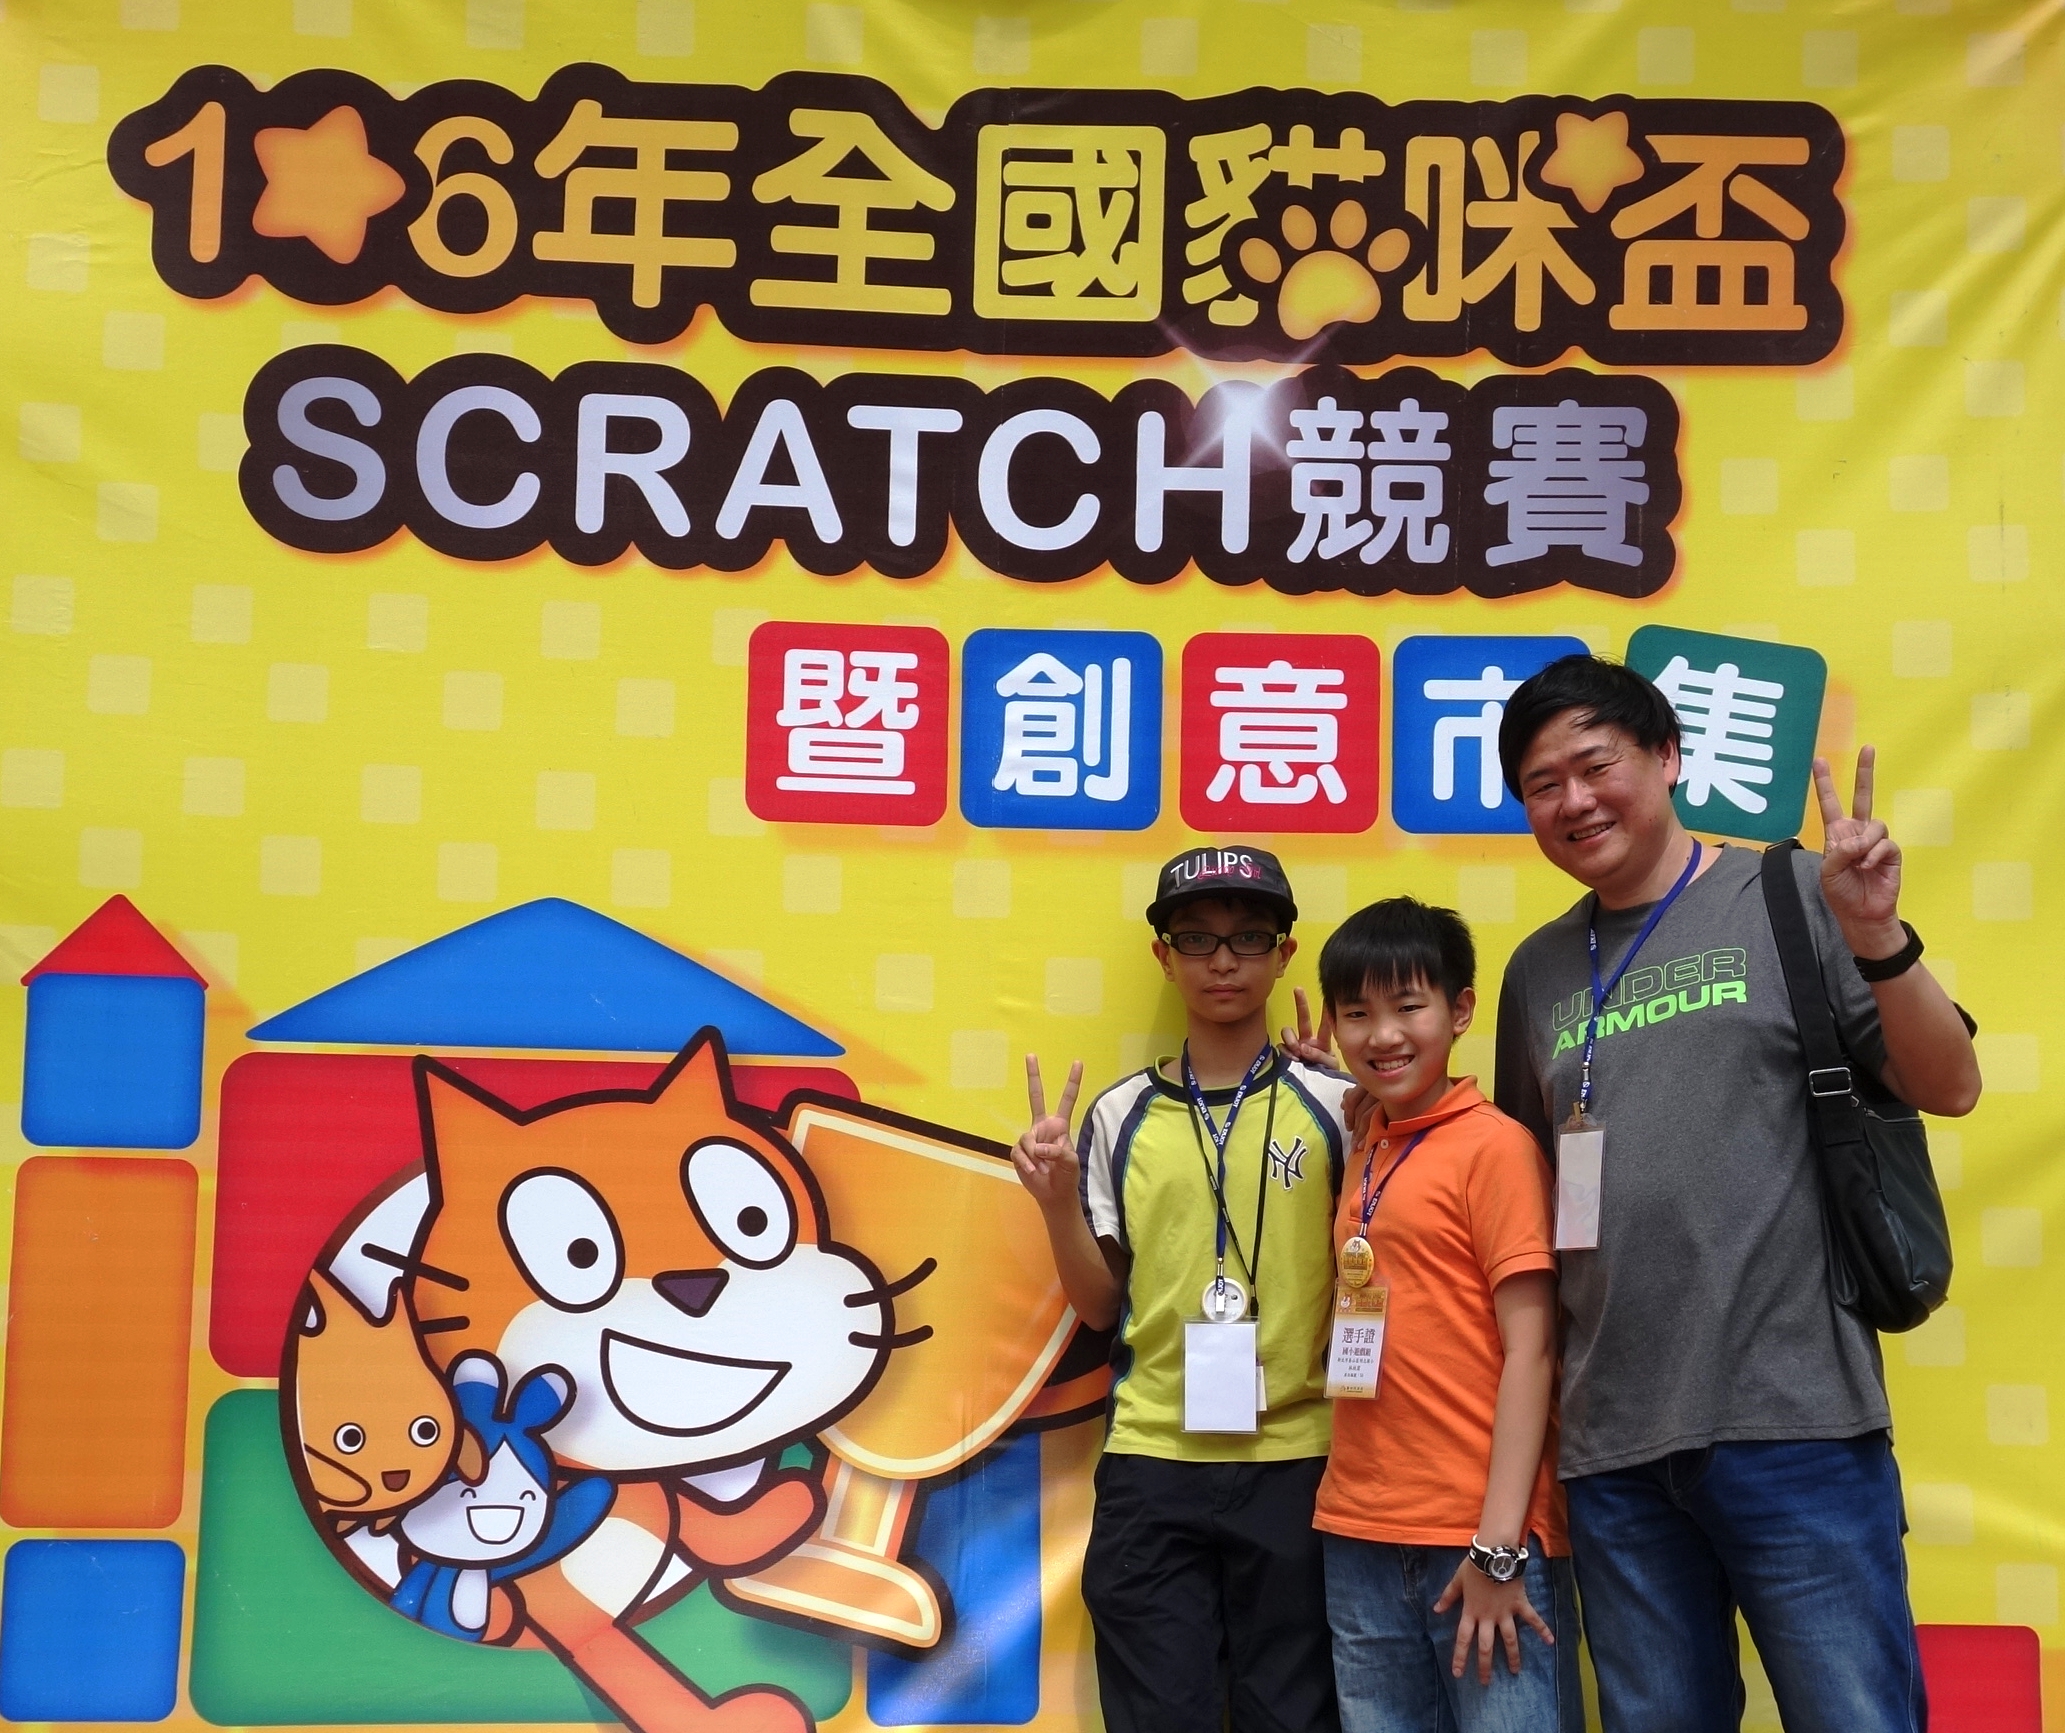 田俊龍老師帶領學生參加全國Scratch競賽